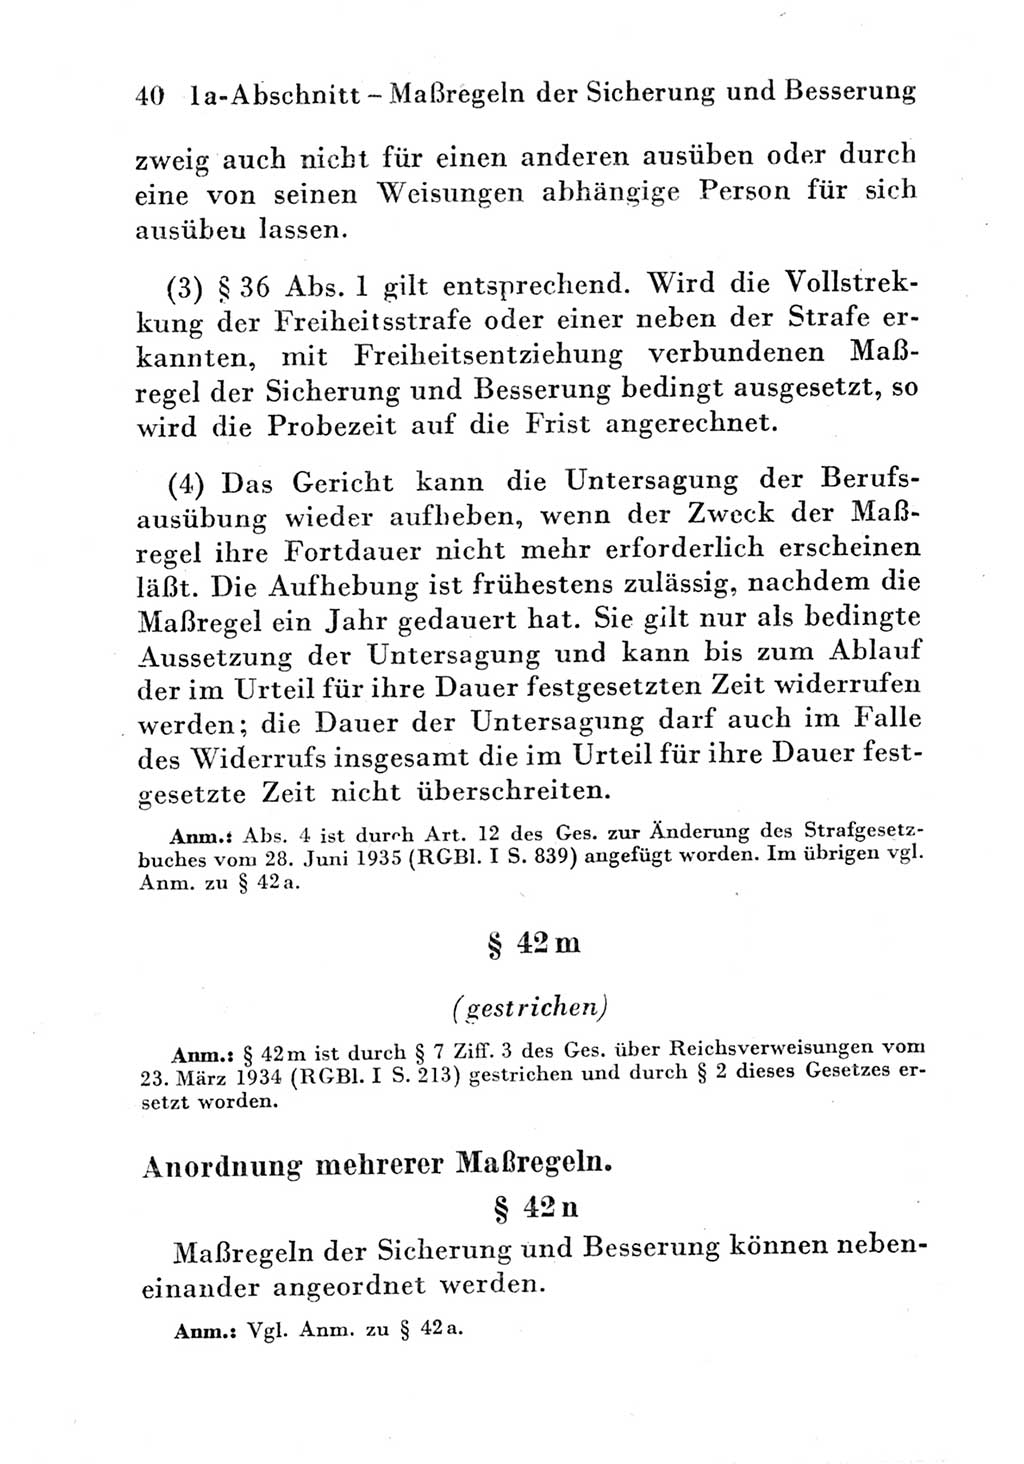 Strafgesetzbuch (StGB) und andere Strafgesetze [Deutsche Demokratische Republik (DDR)] 1951, Seite 40 (StGB Strafges. DDR 1951, S. 40)